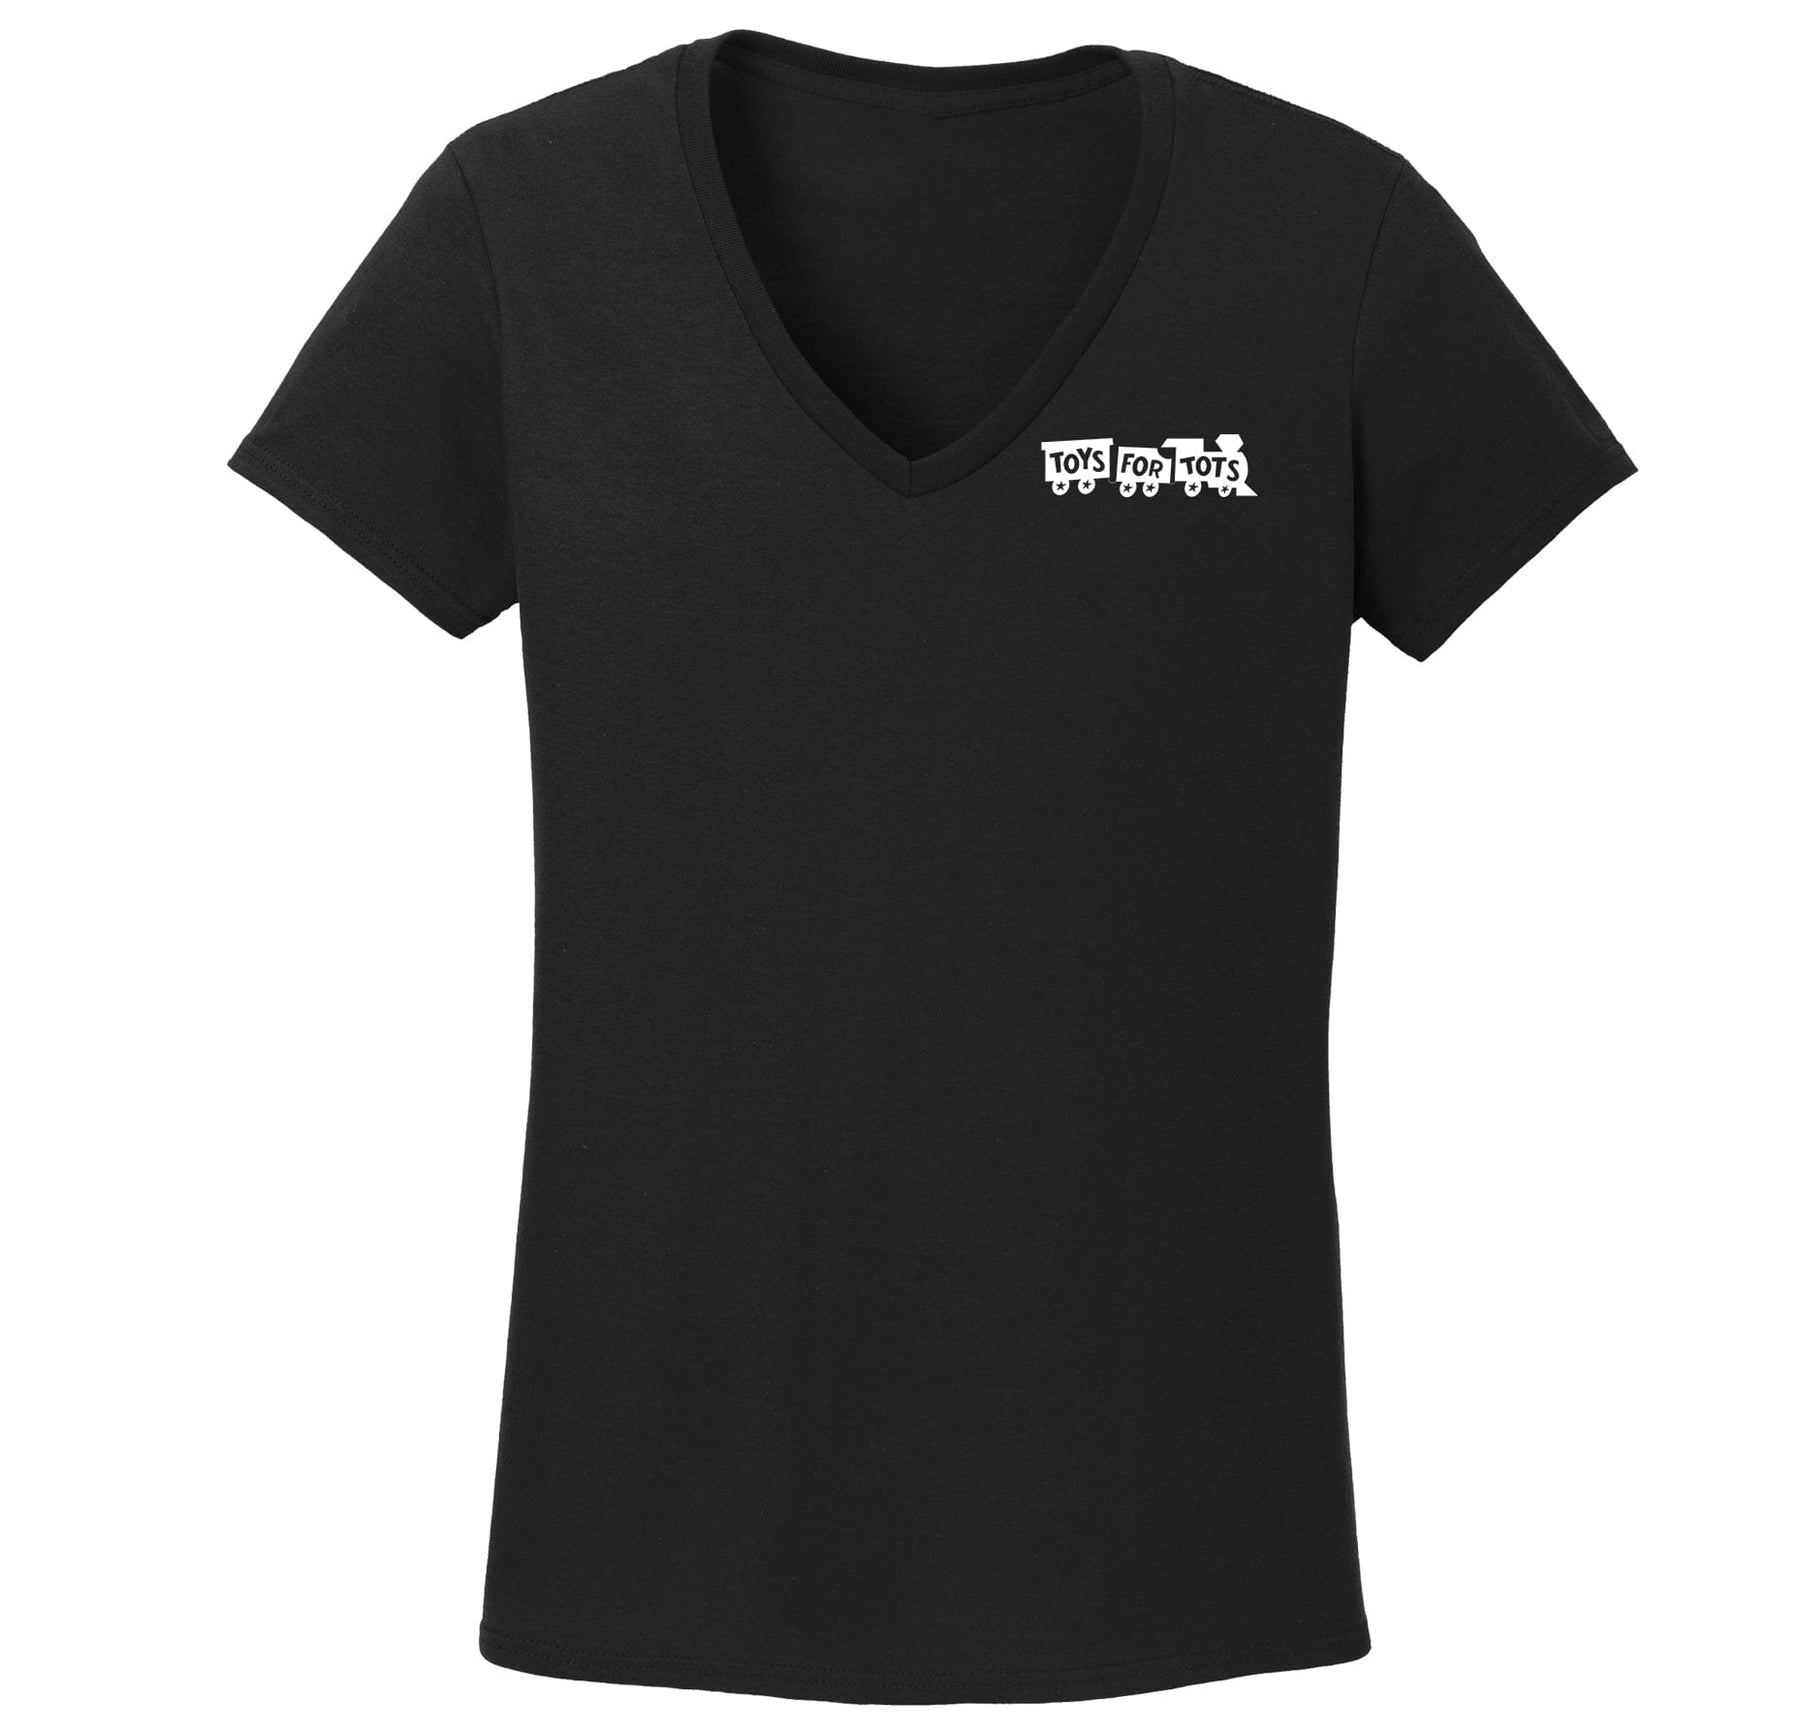 White/Black TFT Chest Seal Women's V-Neck TFT Shirt marinecorpsdirecttft S BLACK 